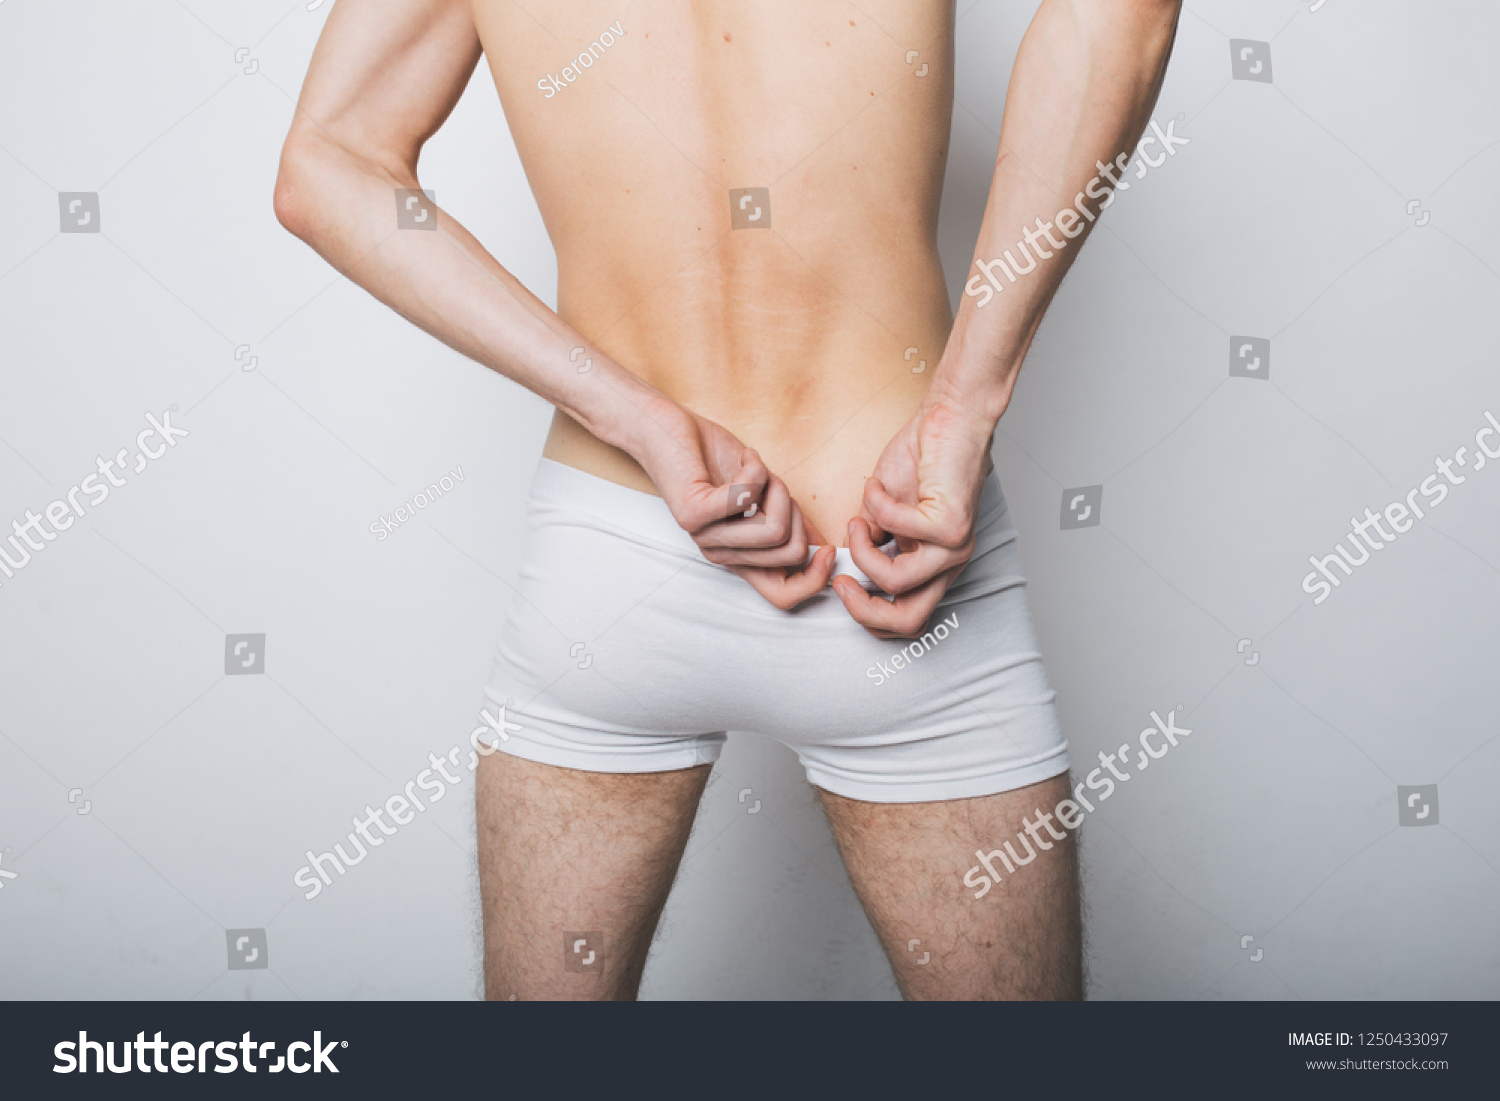 Male anus pictures